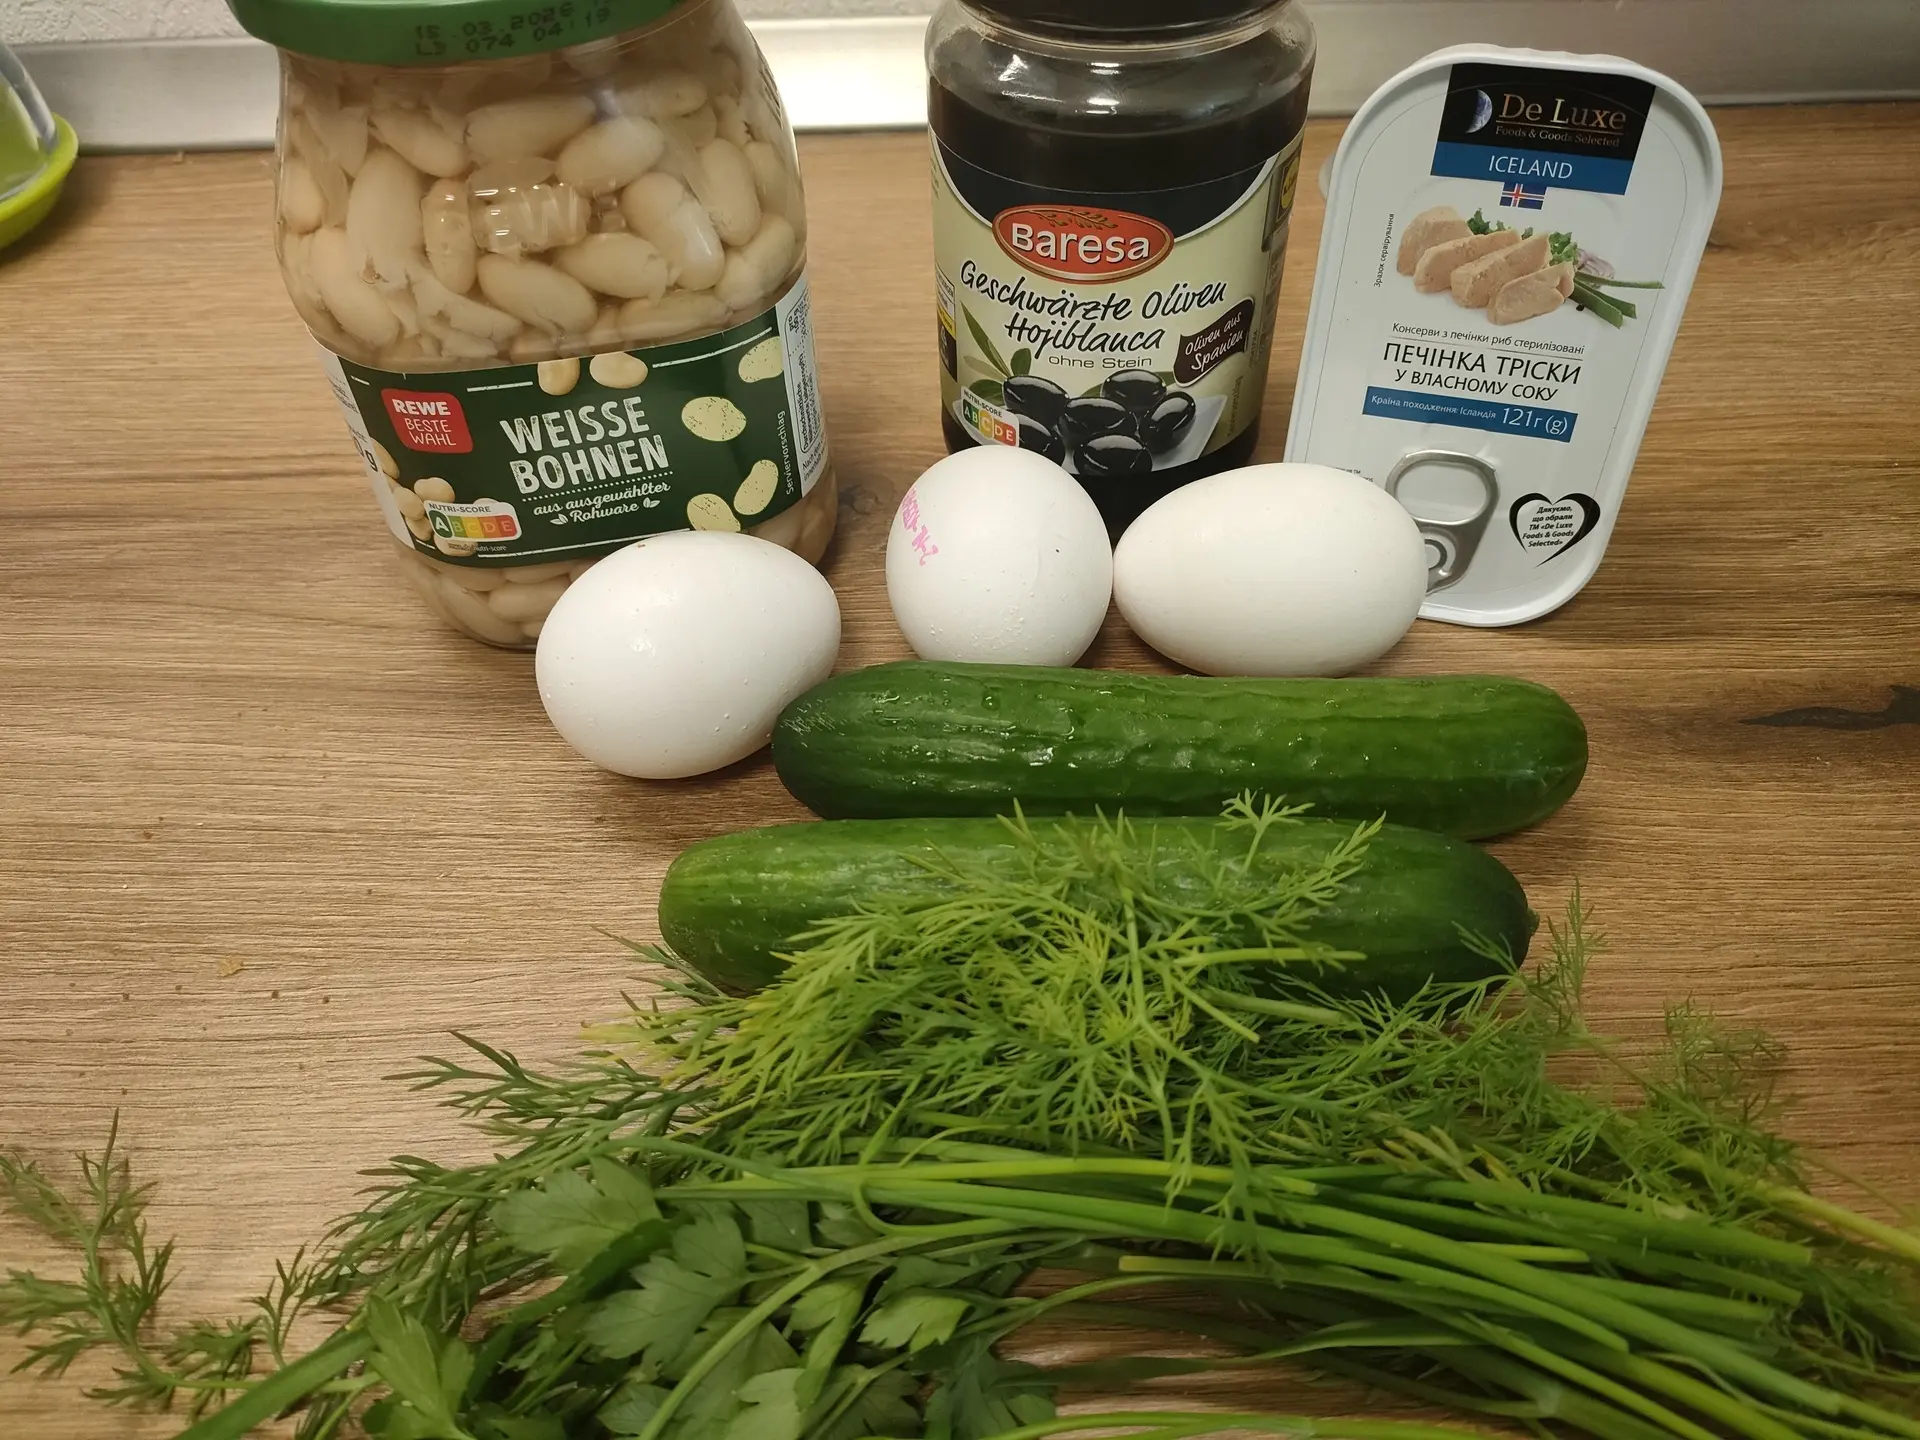 Фасолевый салат с печенью трески и оливками: шаг 1